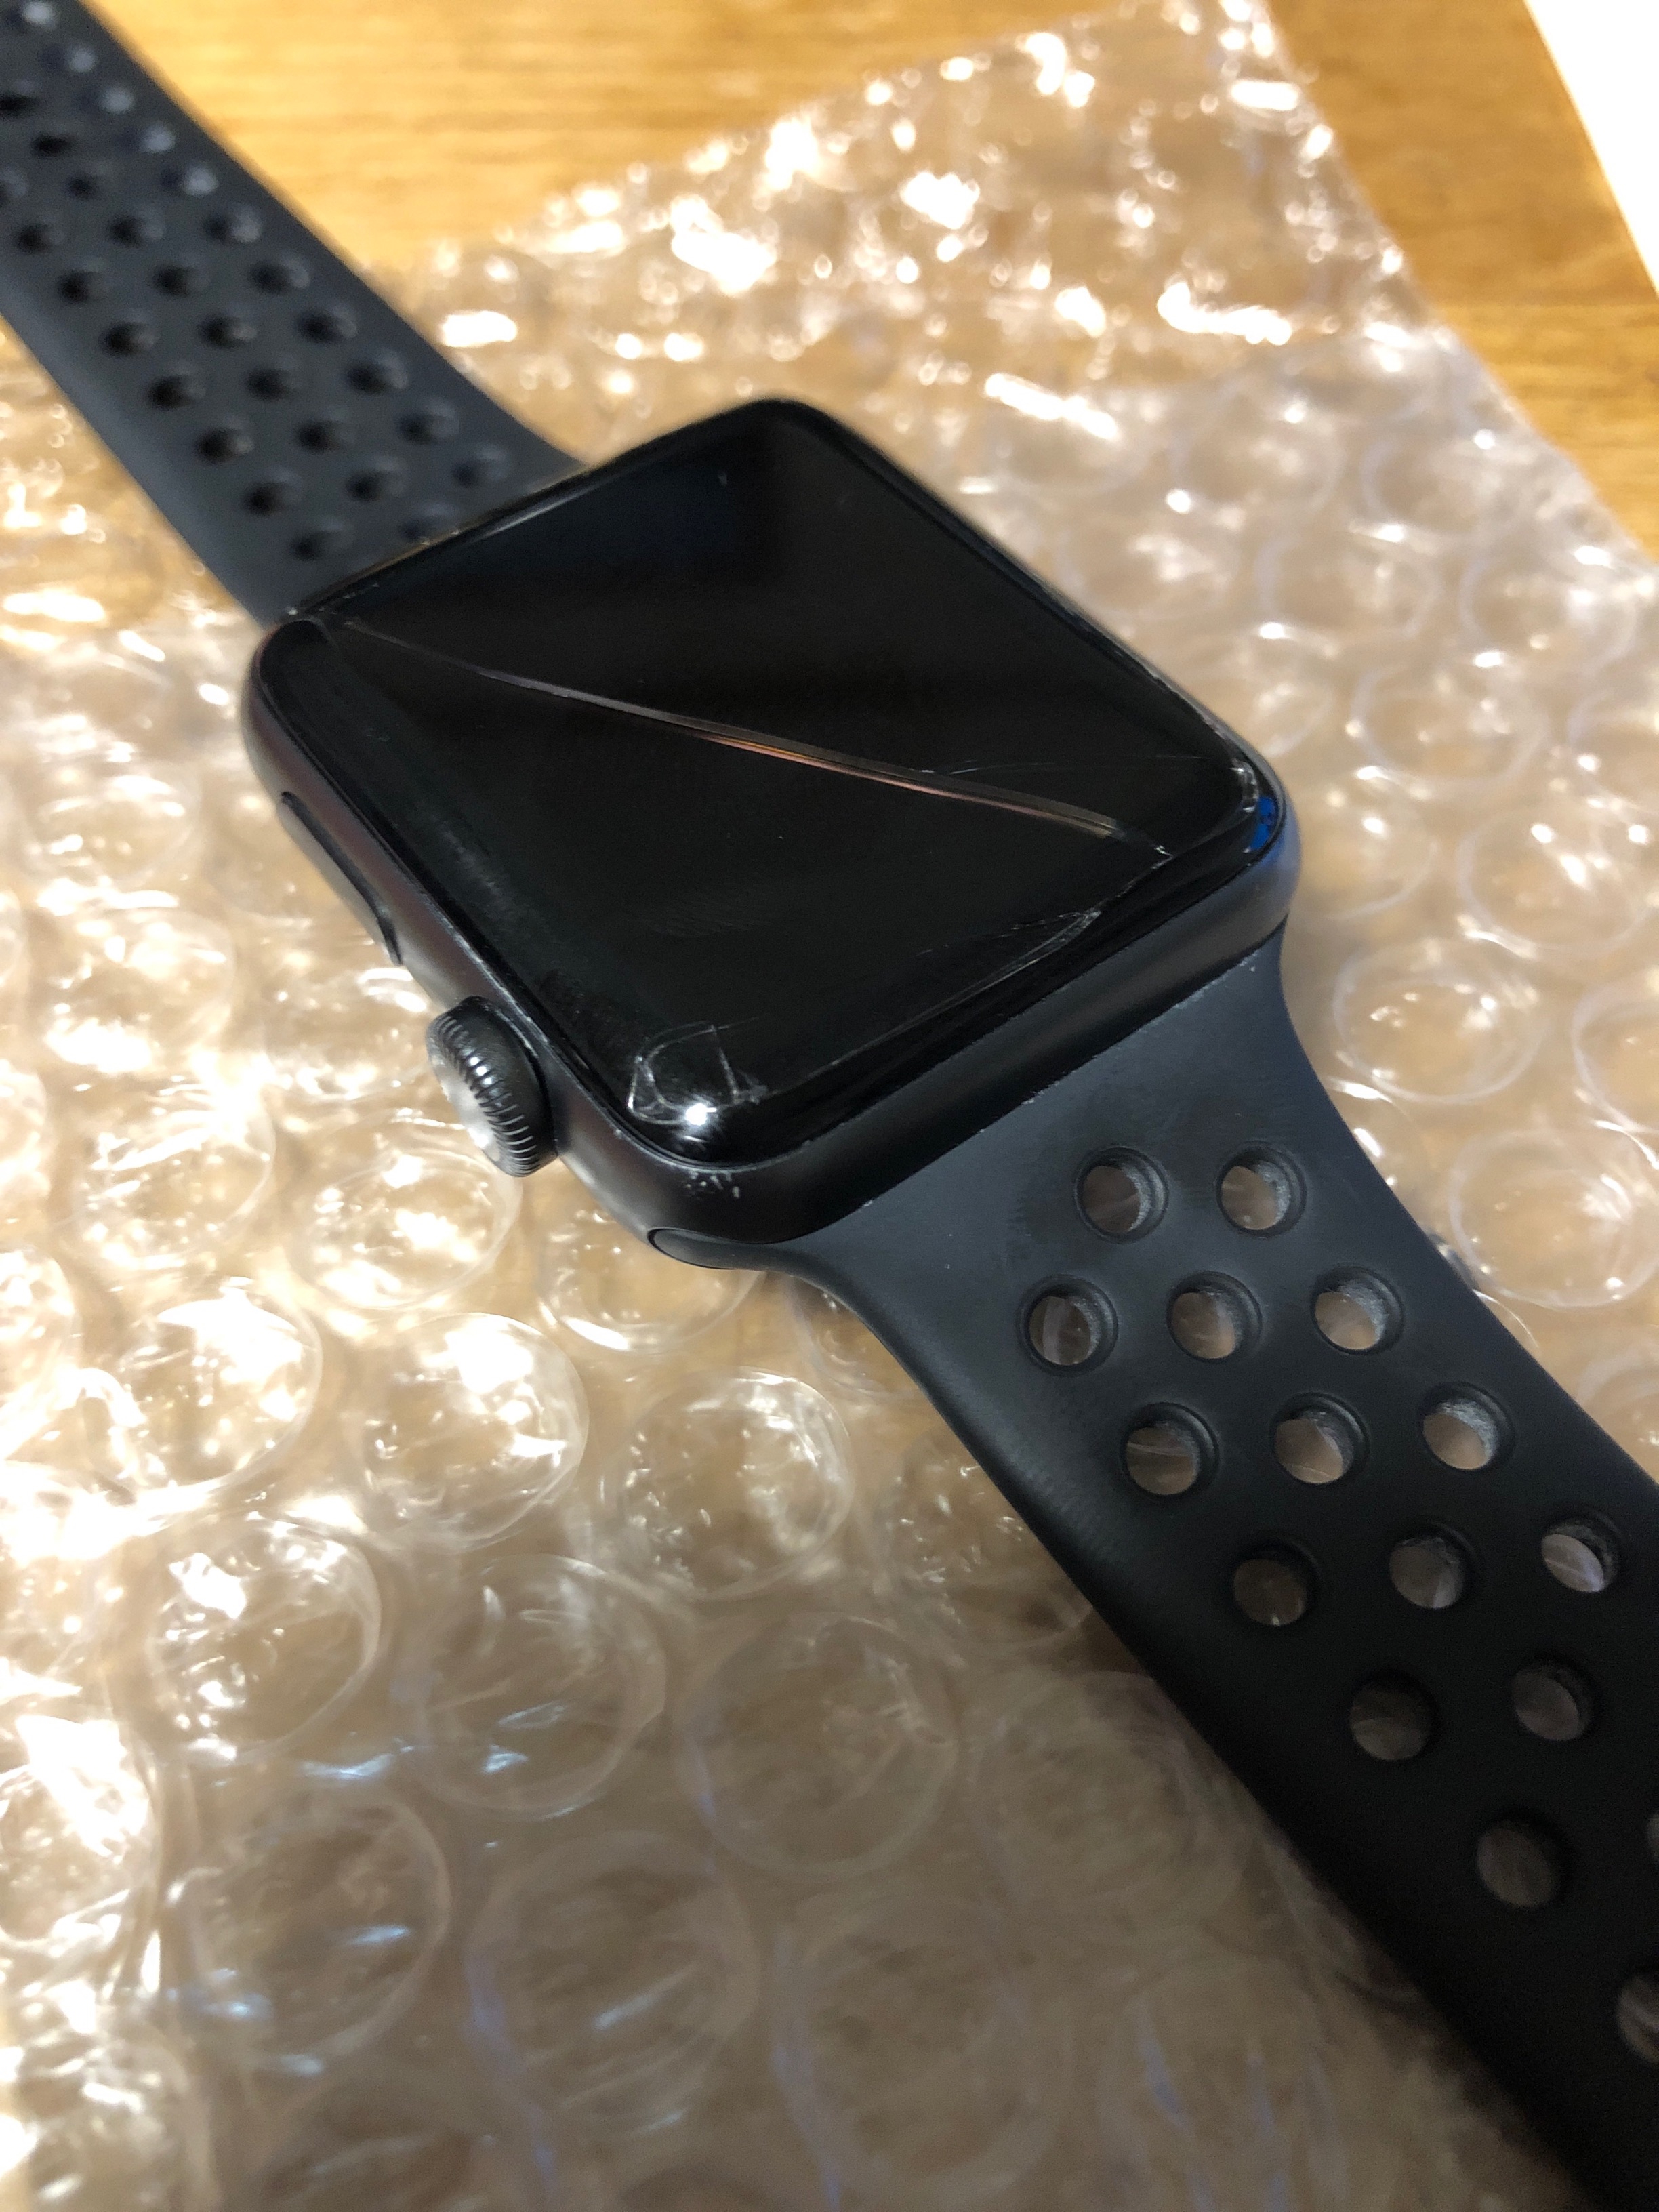 Apple Watchの画面が割れたけど無償交換してもらいました | うぐいす 